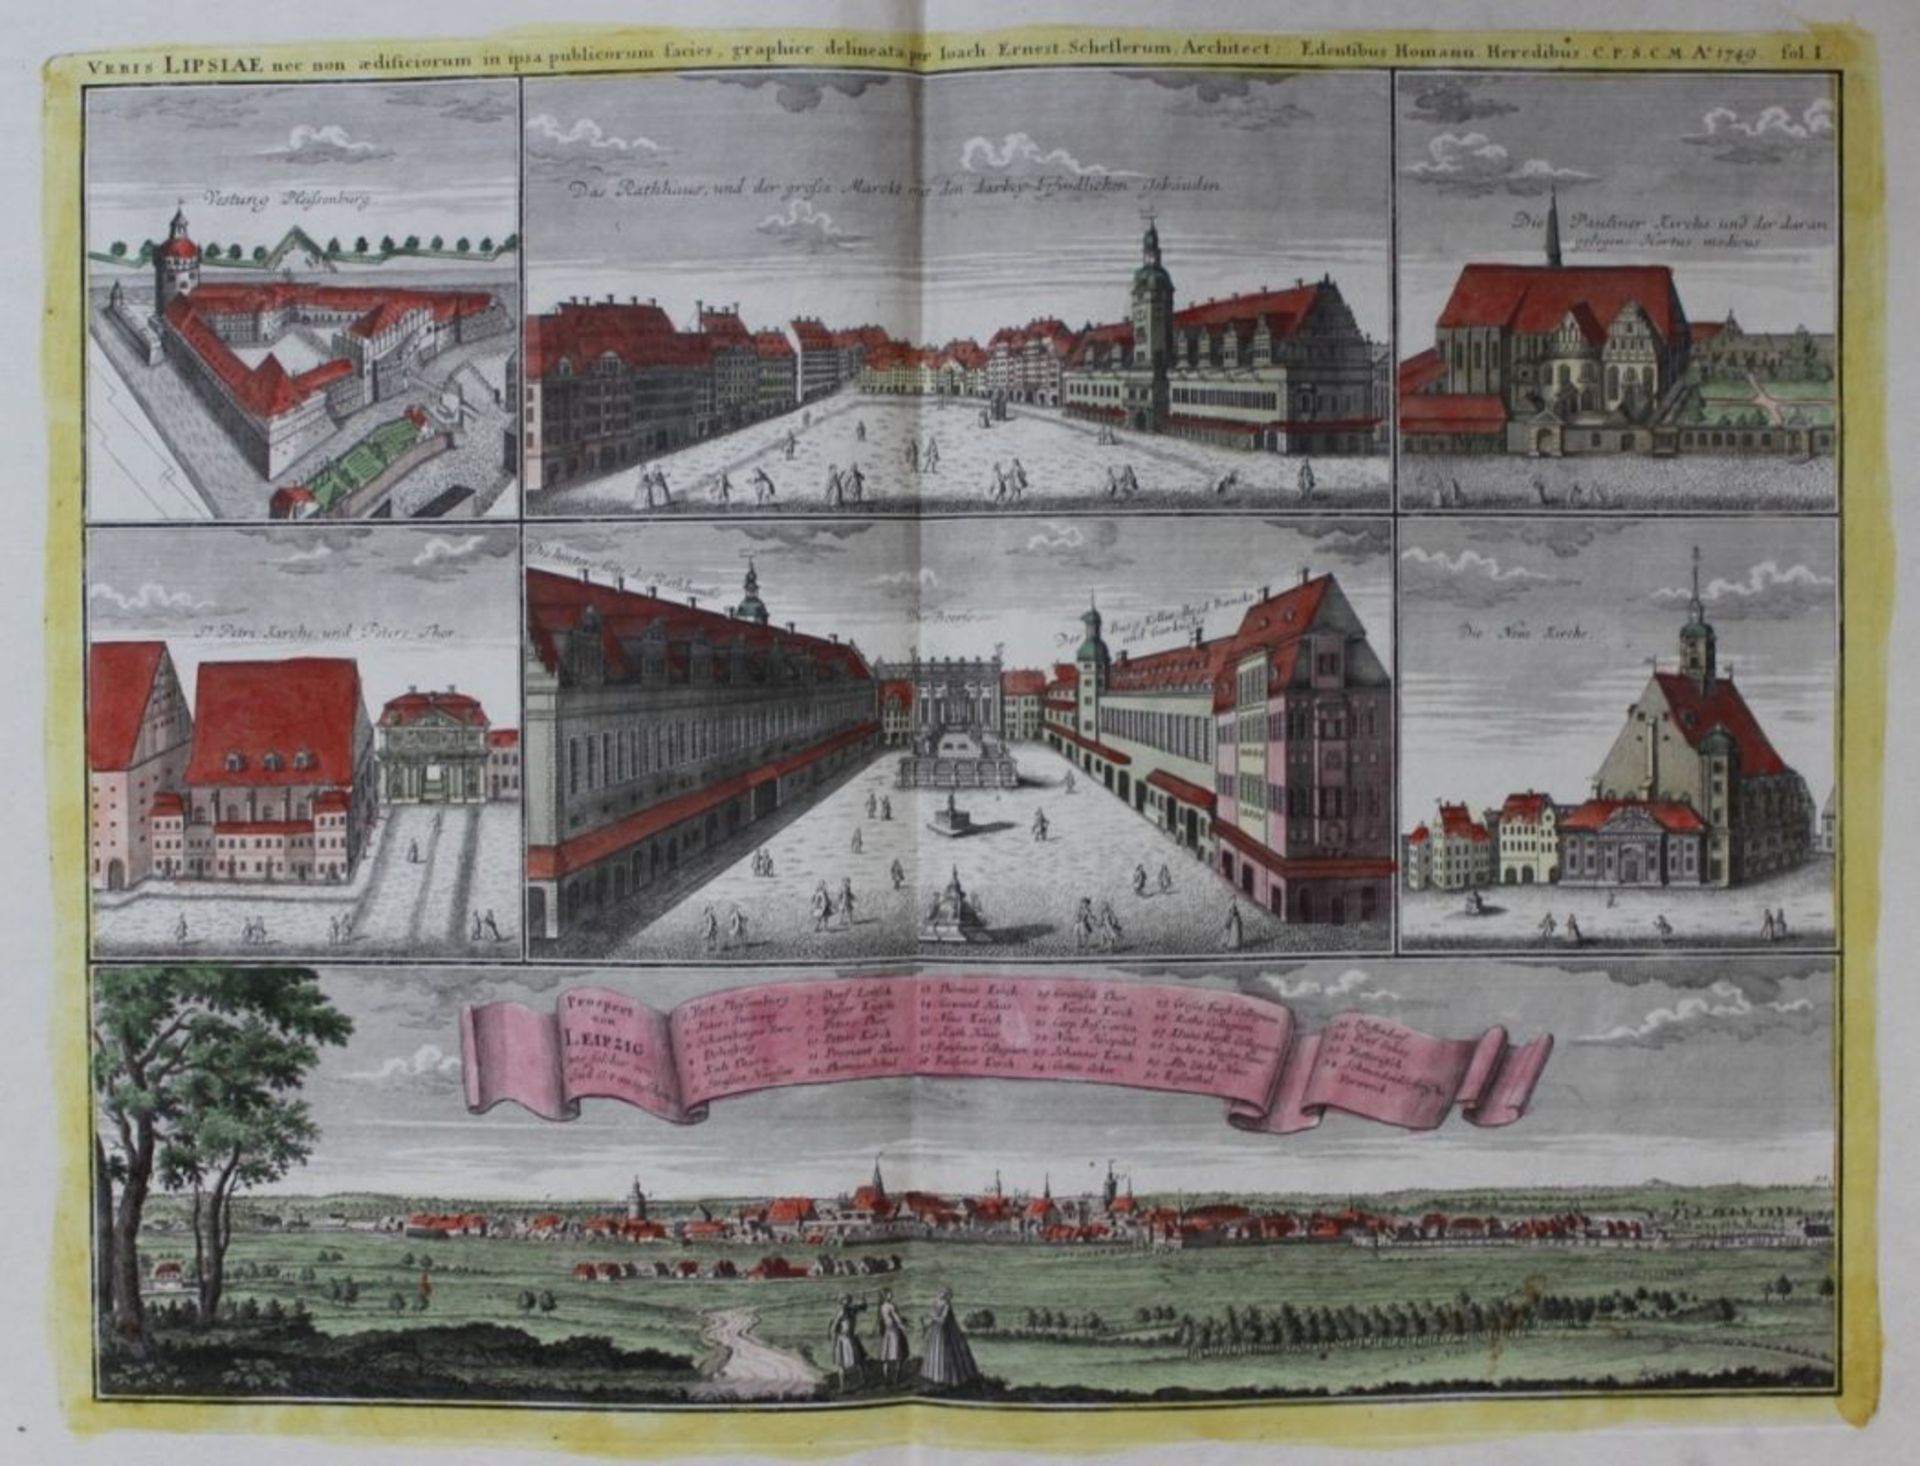 Kupferstich - Joachim E. Scheffler -Edentibus Homann Heredibus C. P. S. C. M. A. 1749. "Leipzig -